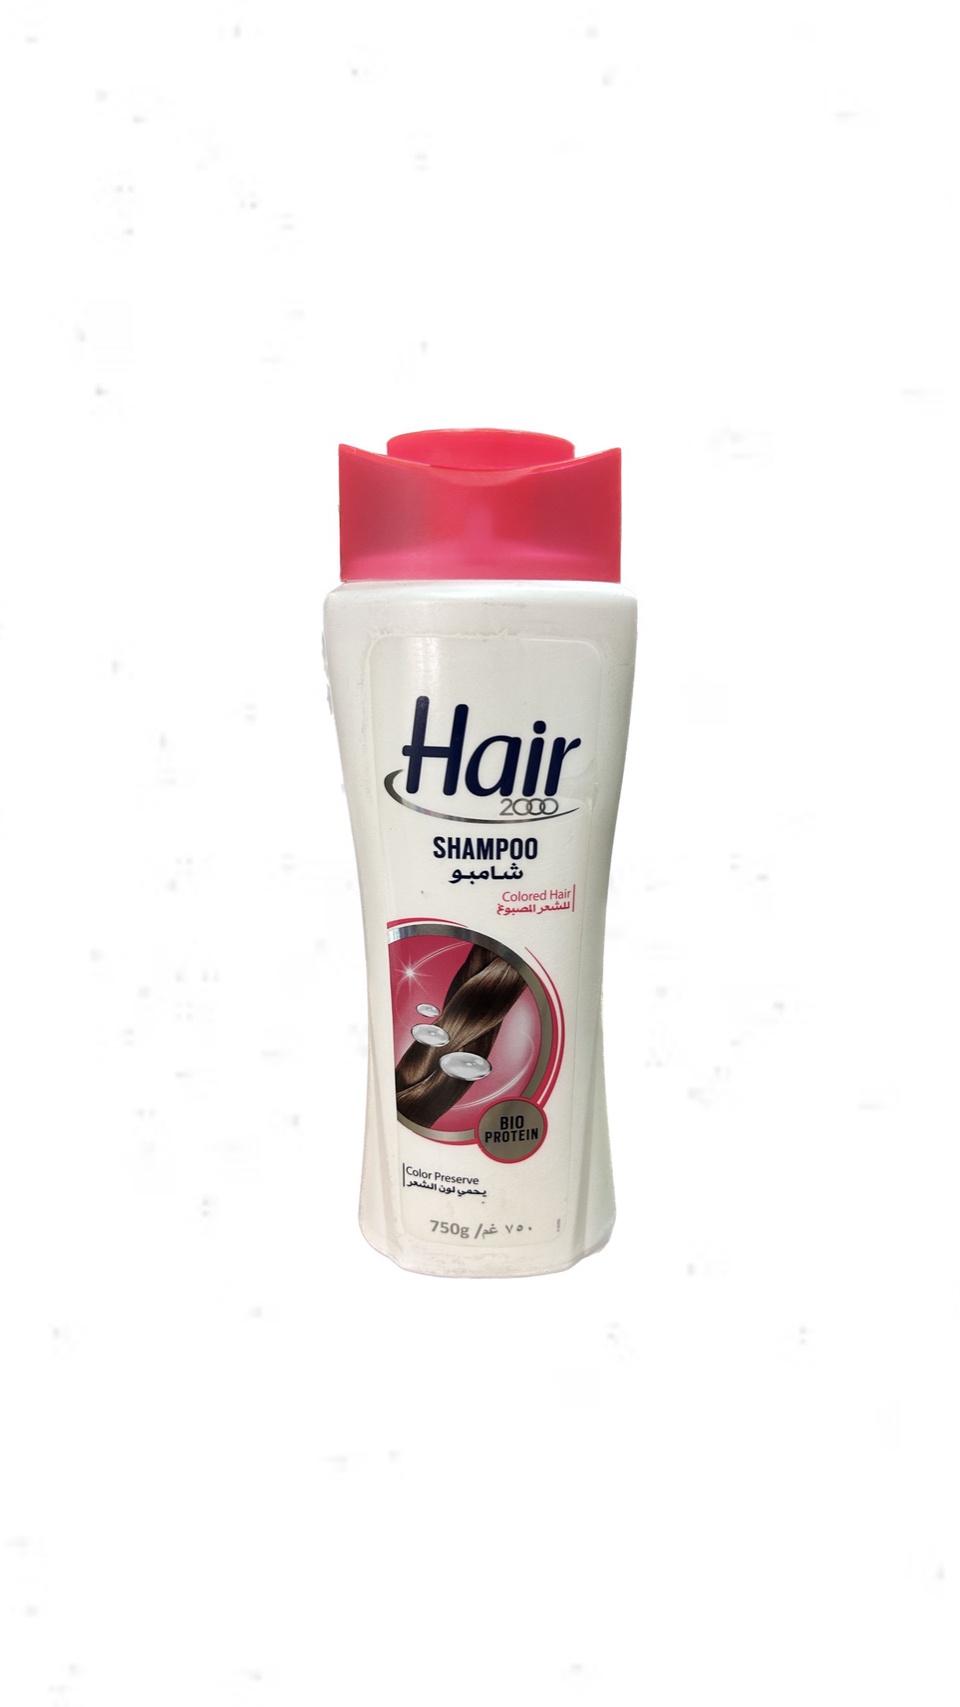 Шампунь HAIR для окрашенных волос 750ml - 300 ₽, заказать онлайн.